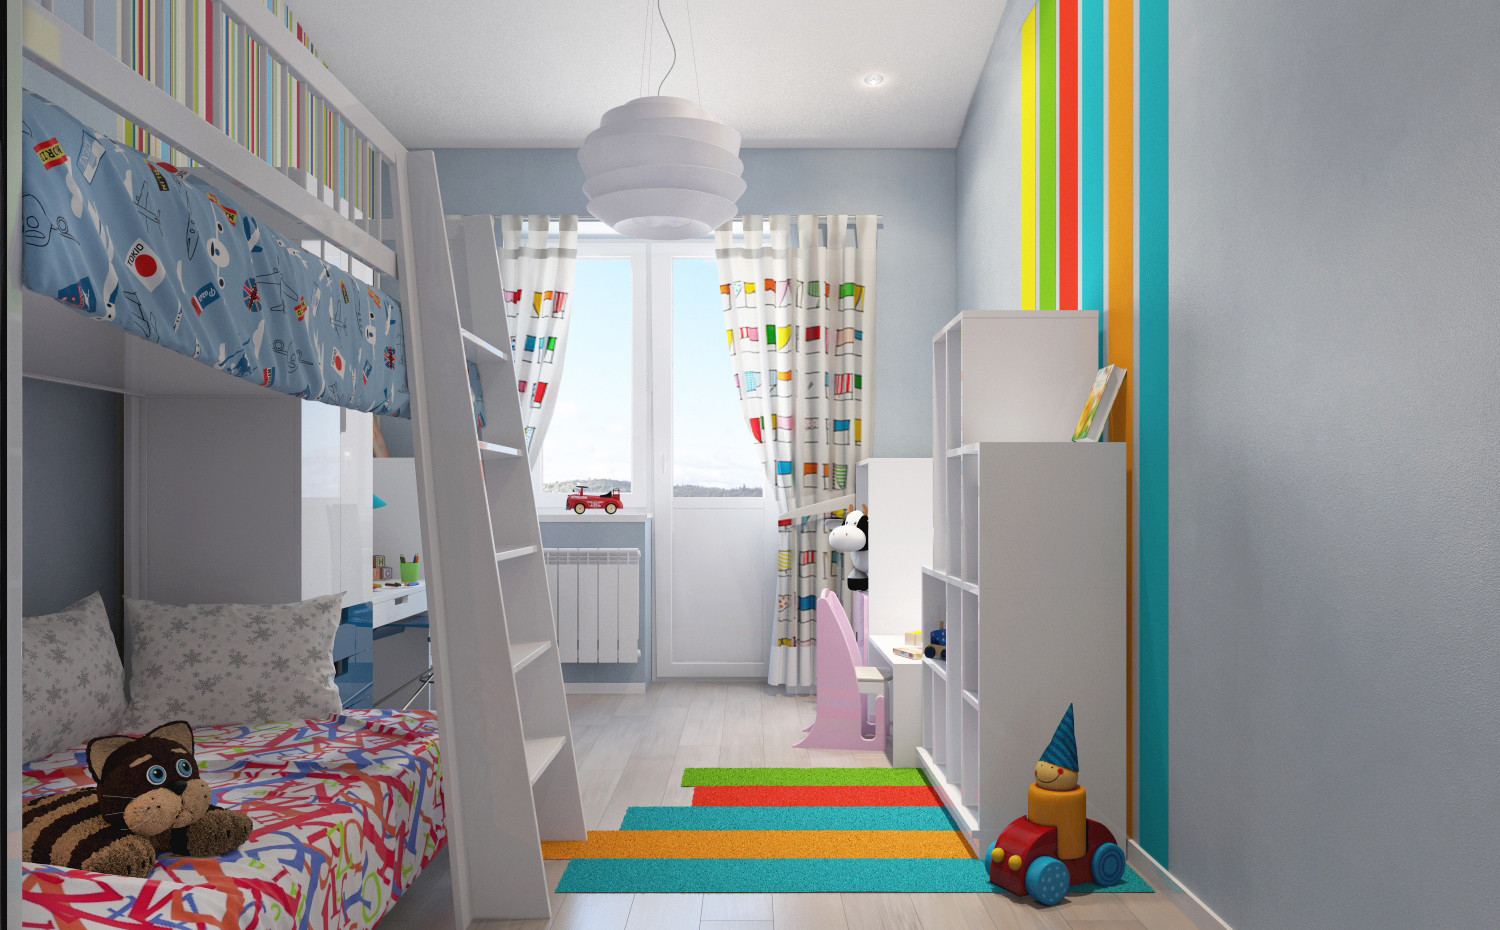 غرفة الأطفال للأطفال من جنسين مختلفين